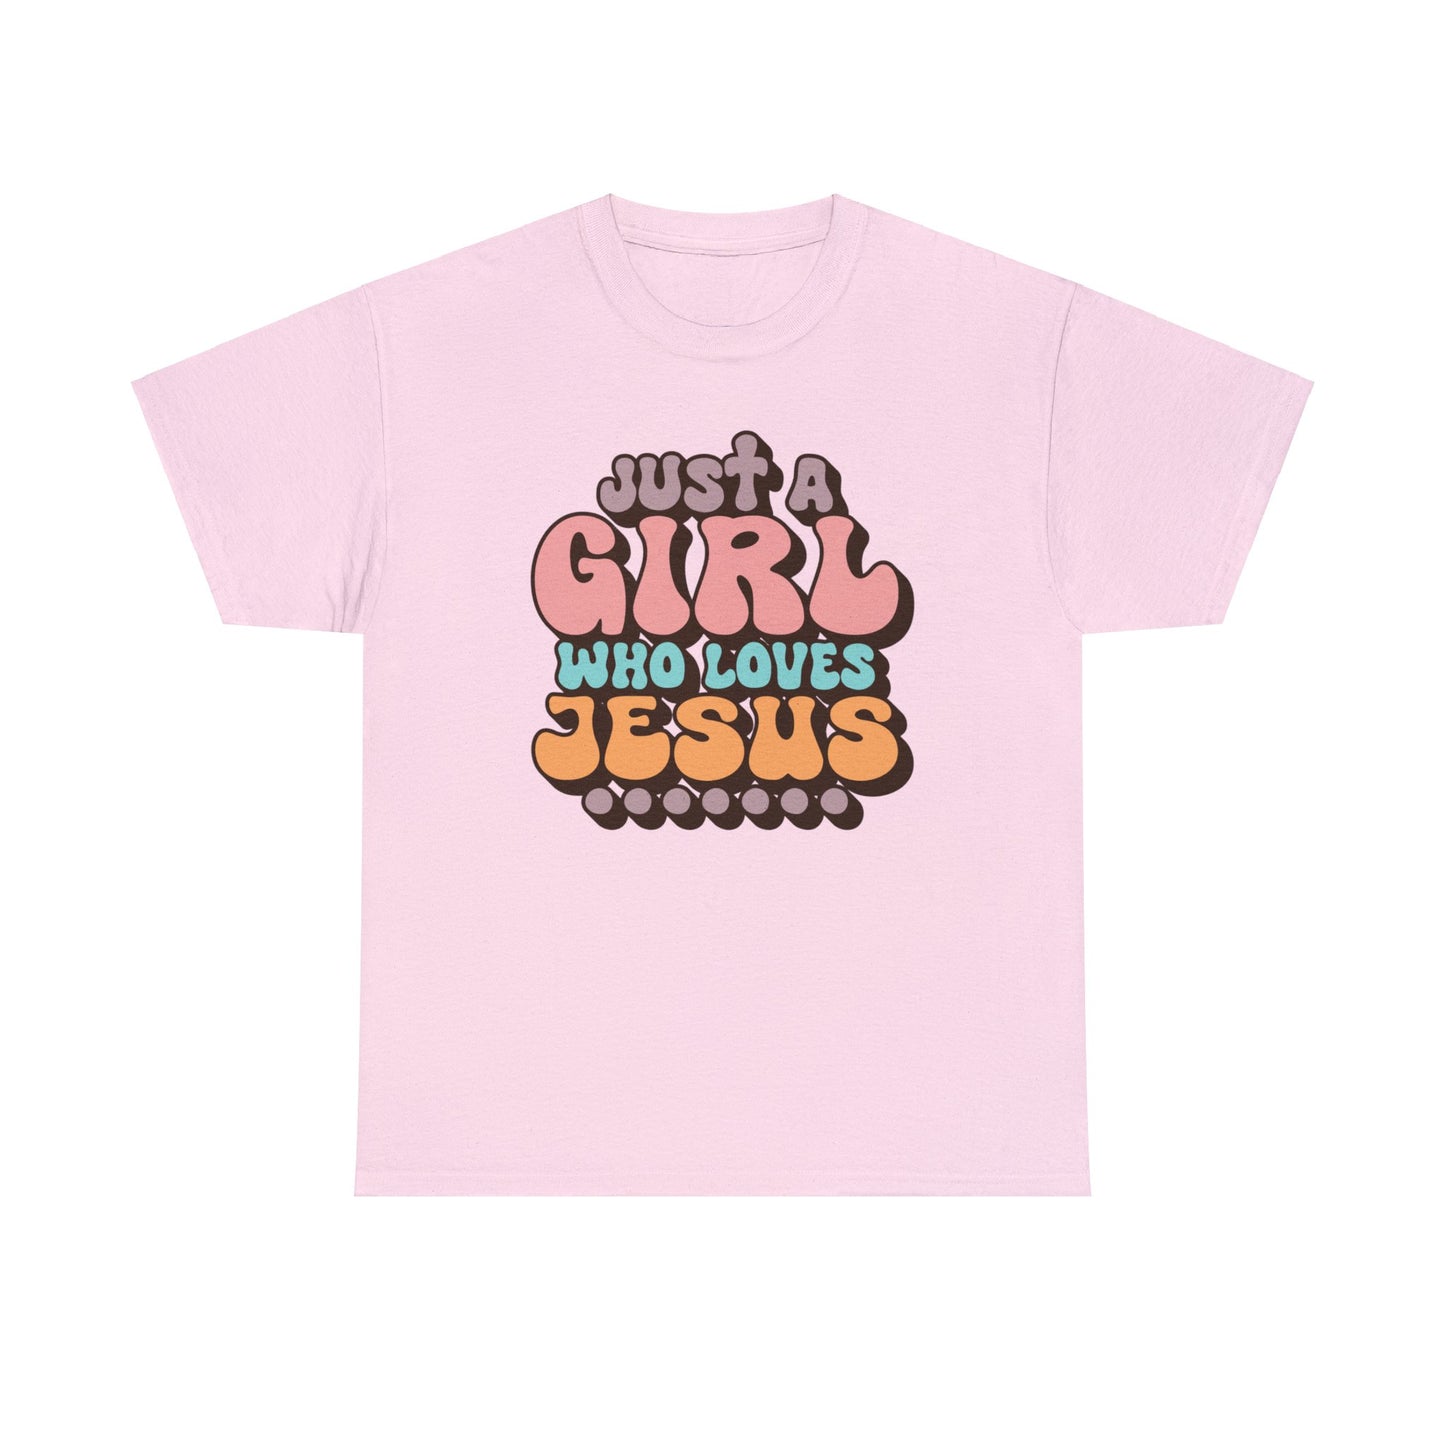 Just A Girl Who Loves Jesus Shirt, Christian Shirt, Religious Shirt, Faith Tee (Faith-21)